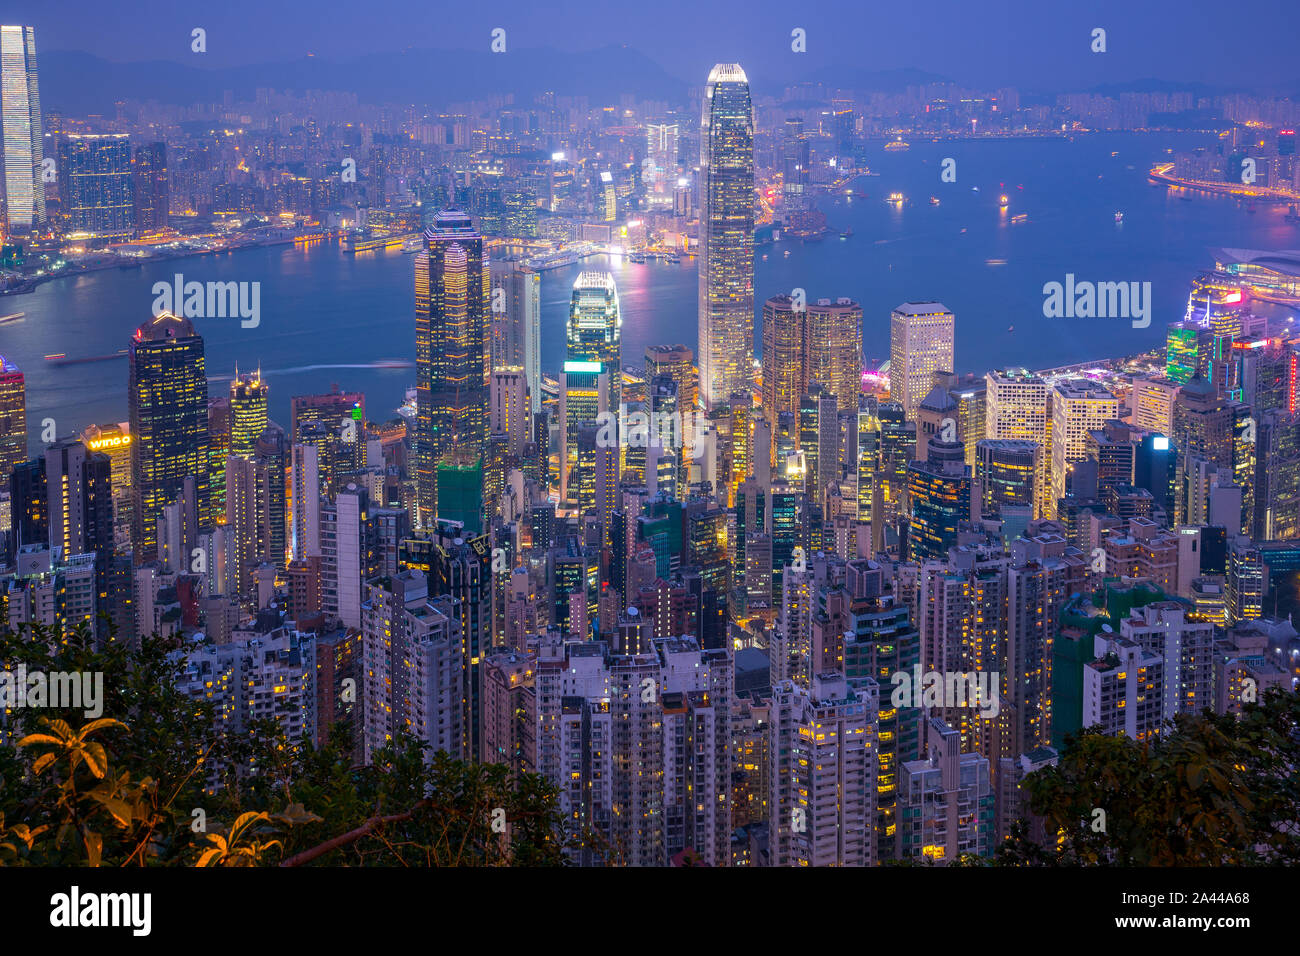 Hong Kong city skyline with landmark buildings at night in Hong Kong. Stock Photo